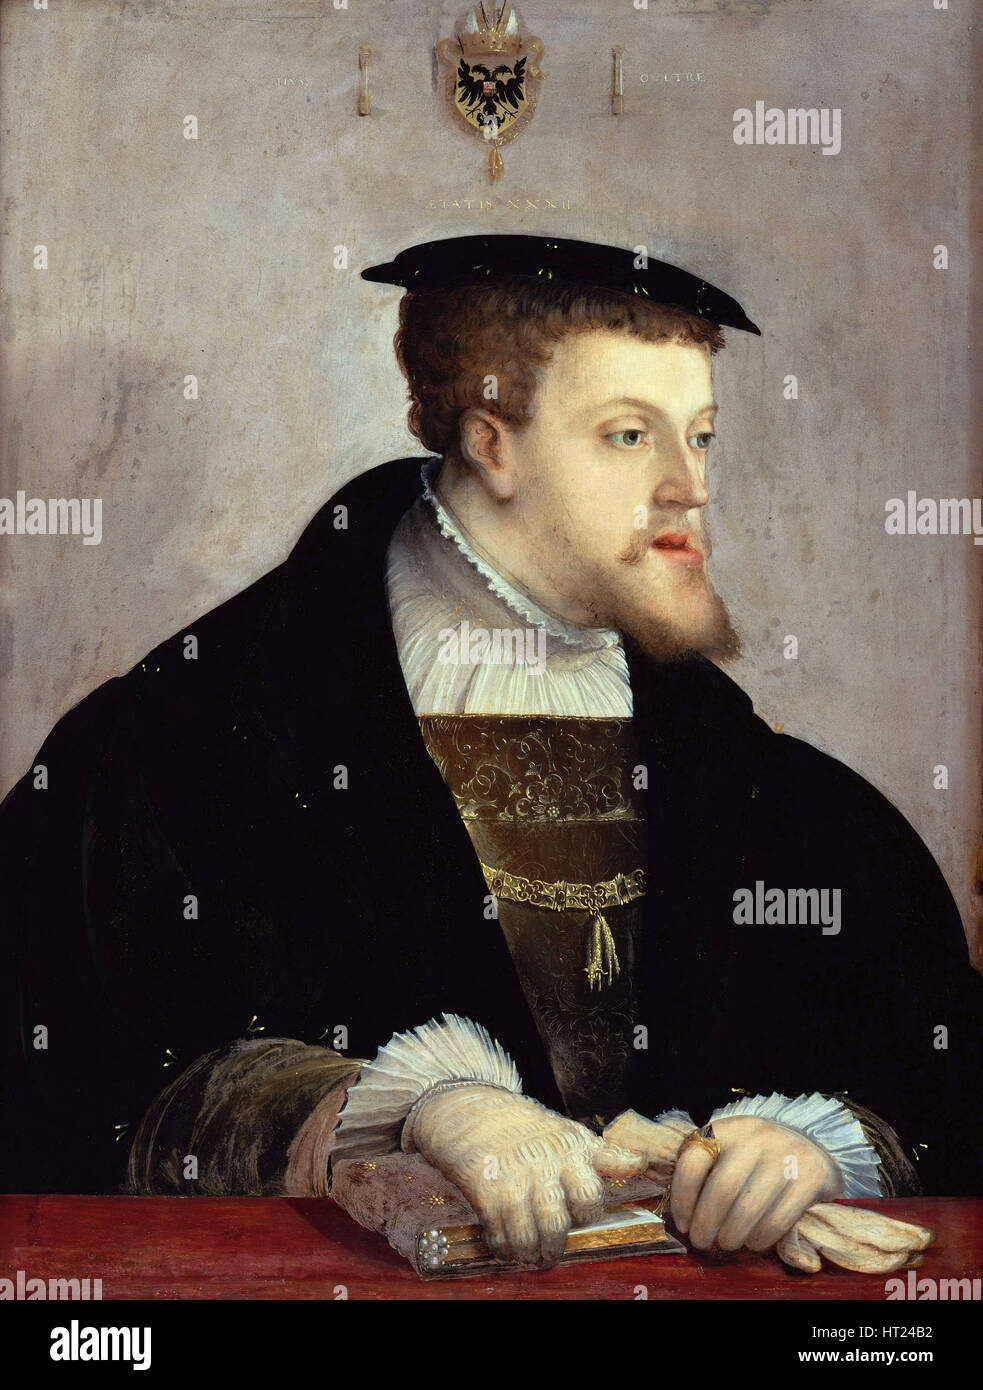 Ritratto dell'Imperatore Carlo V (1500-1558), ca 1532. Artista: Amberger Christoph (ca. 1500-1562) Foto Stock